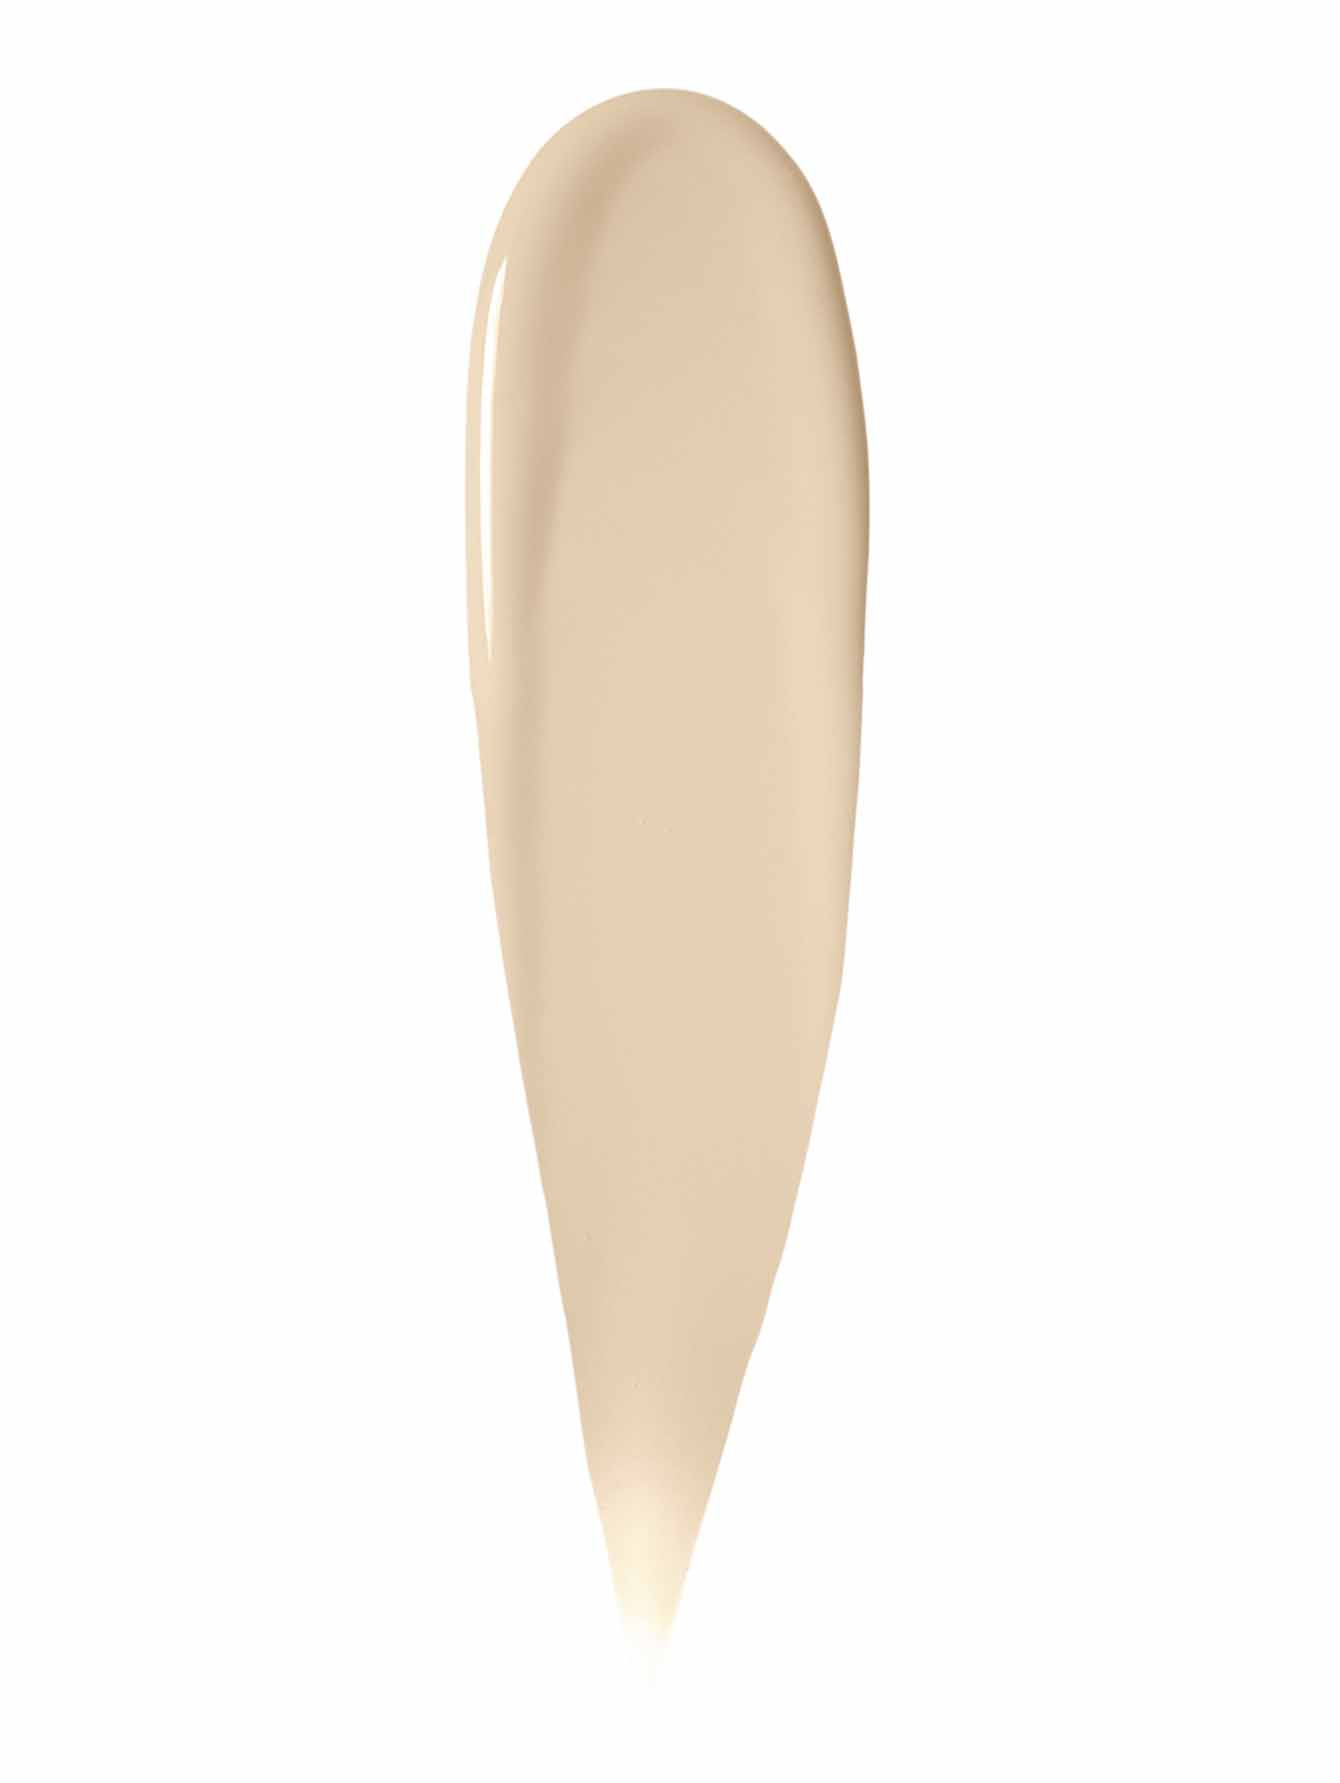 Тональный крем SPF 40, Ivory Makeup - Обтравка1